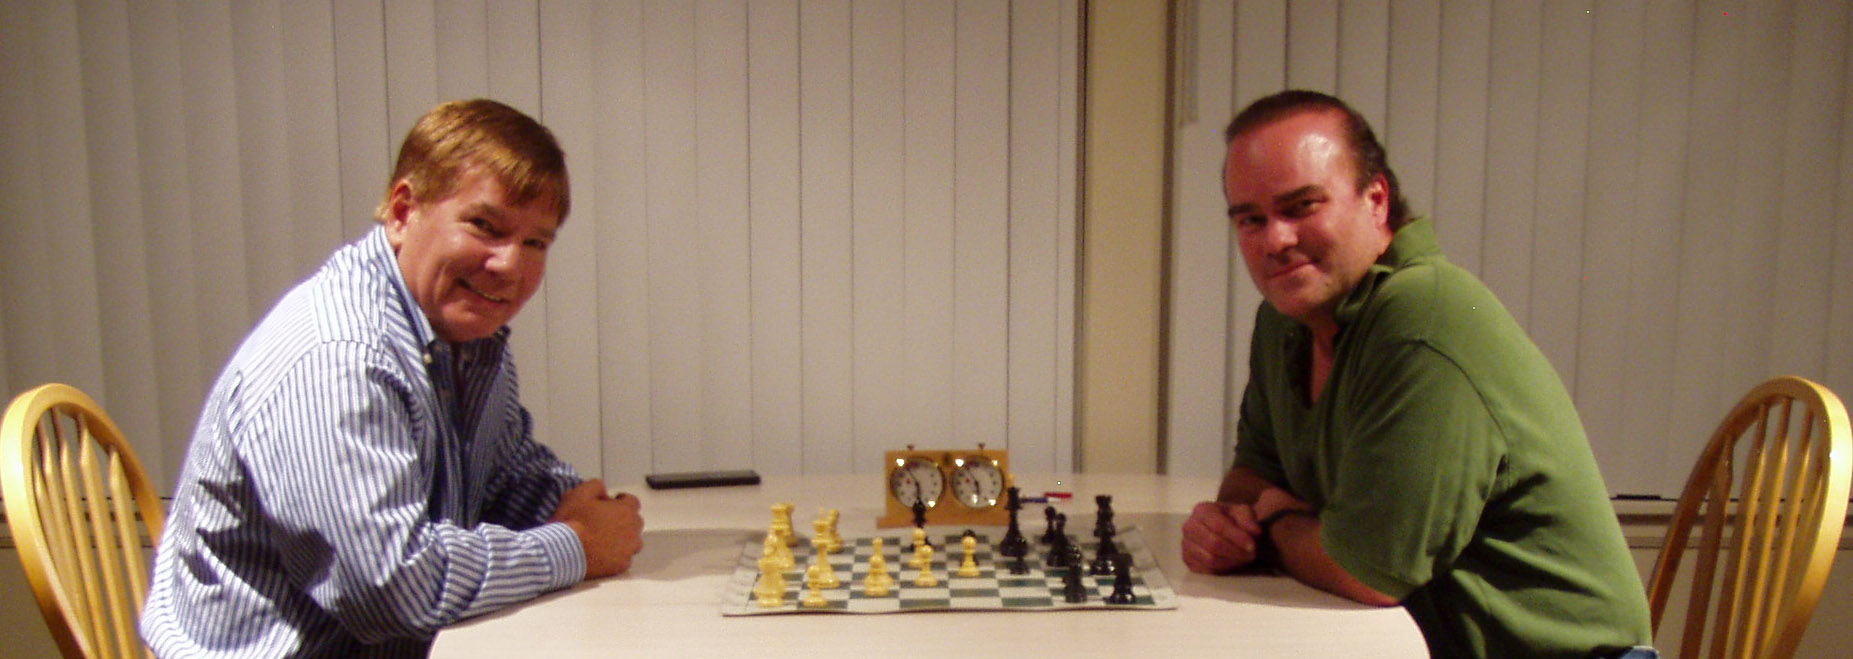 ivan kasparov chess